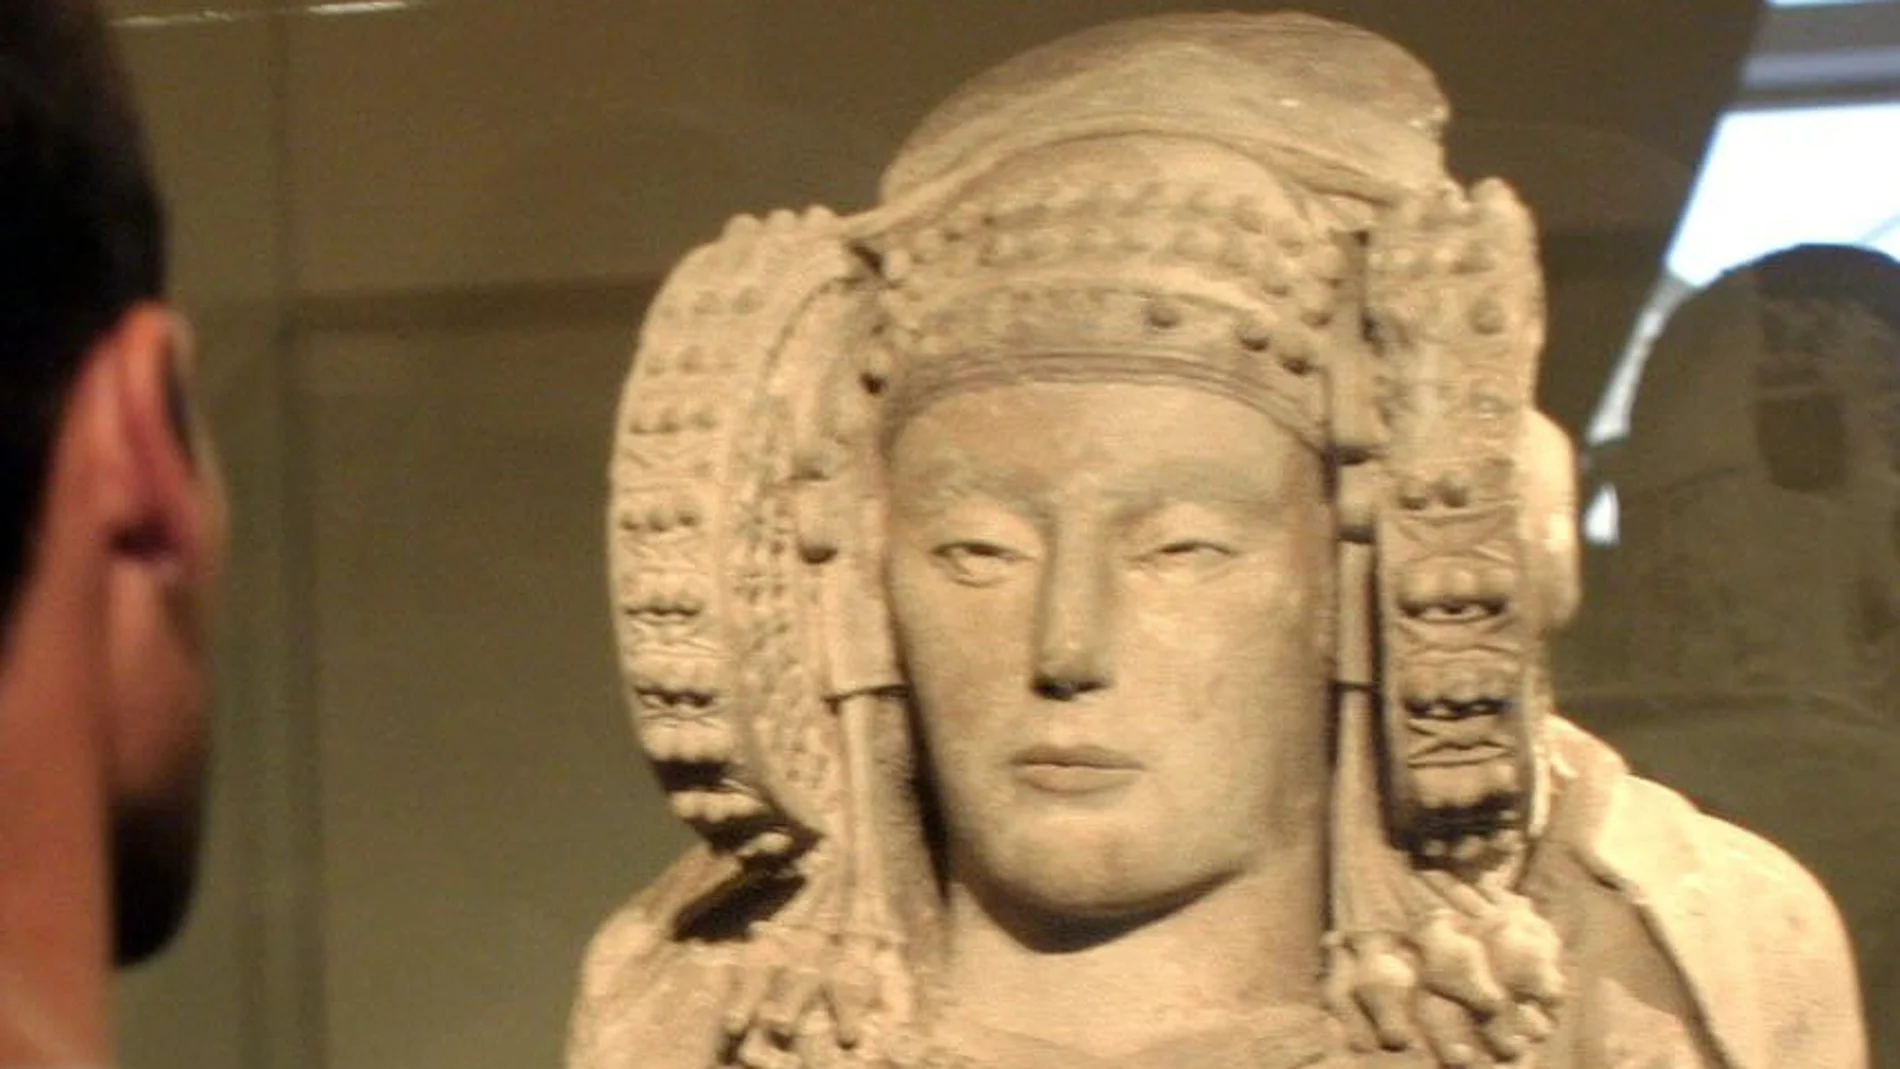 Imagen original de la Dama de Elche, una pieza clave del arte íbero, cuando estuvo expuesta en una sala del Palacio de Altamira en Elche. ARCHIVO